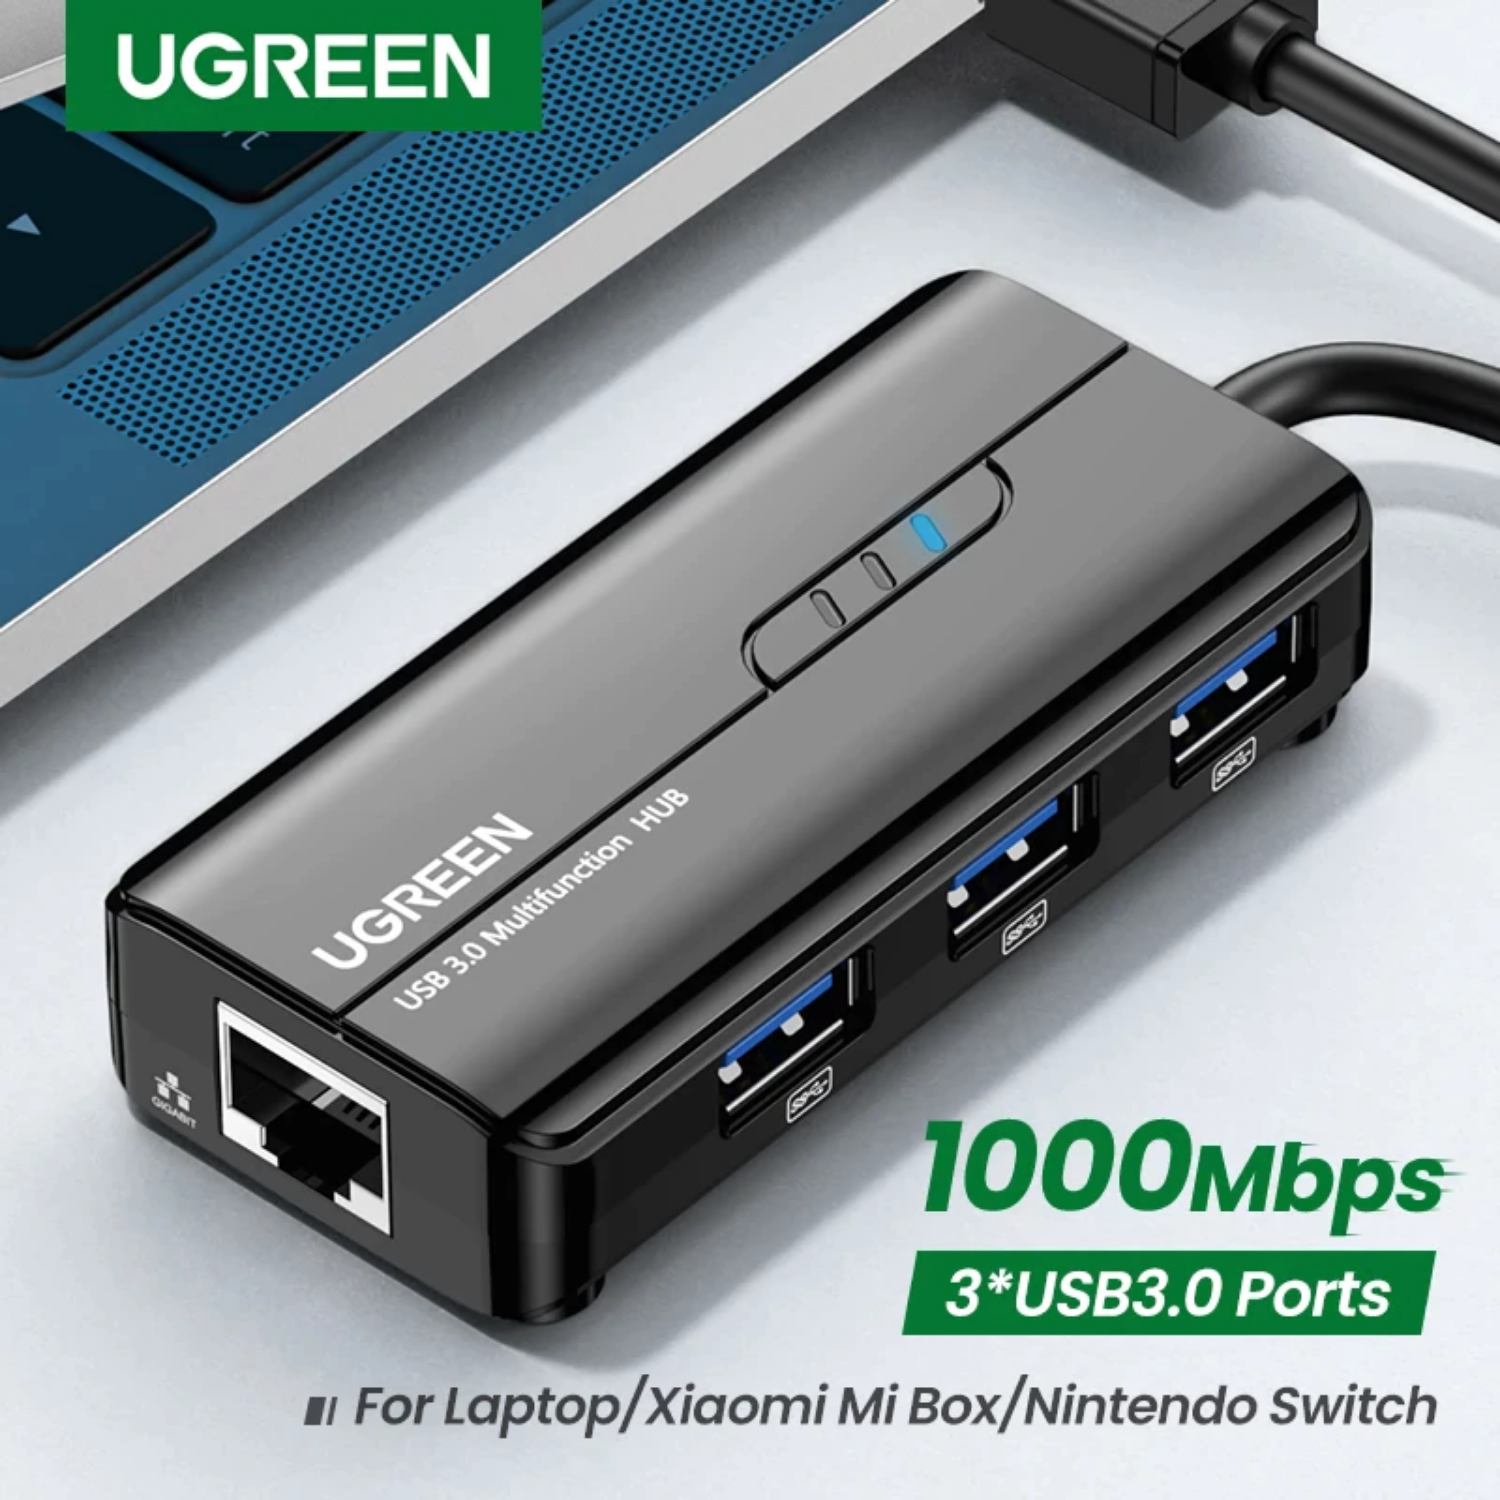 Adaptador Ugreen USB-A 4 en 1 RJ45/USB 3.0 (20265)